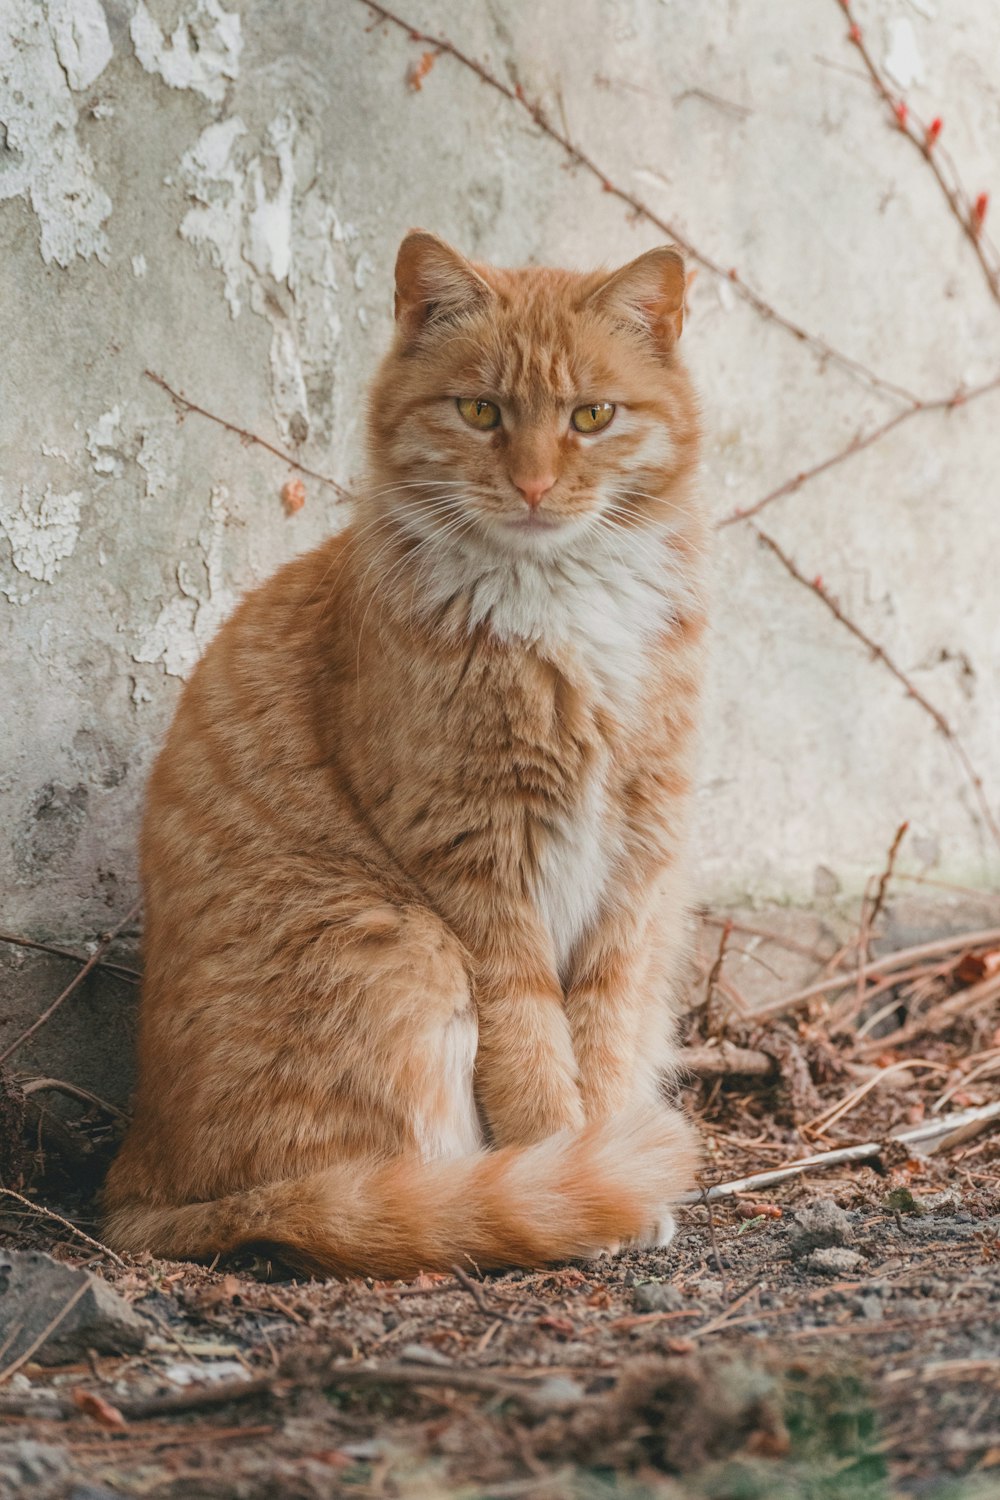 orange tabby cat on brown dried leaves